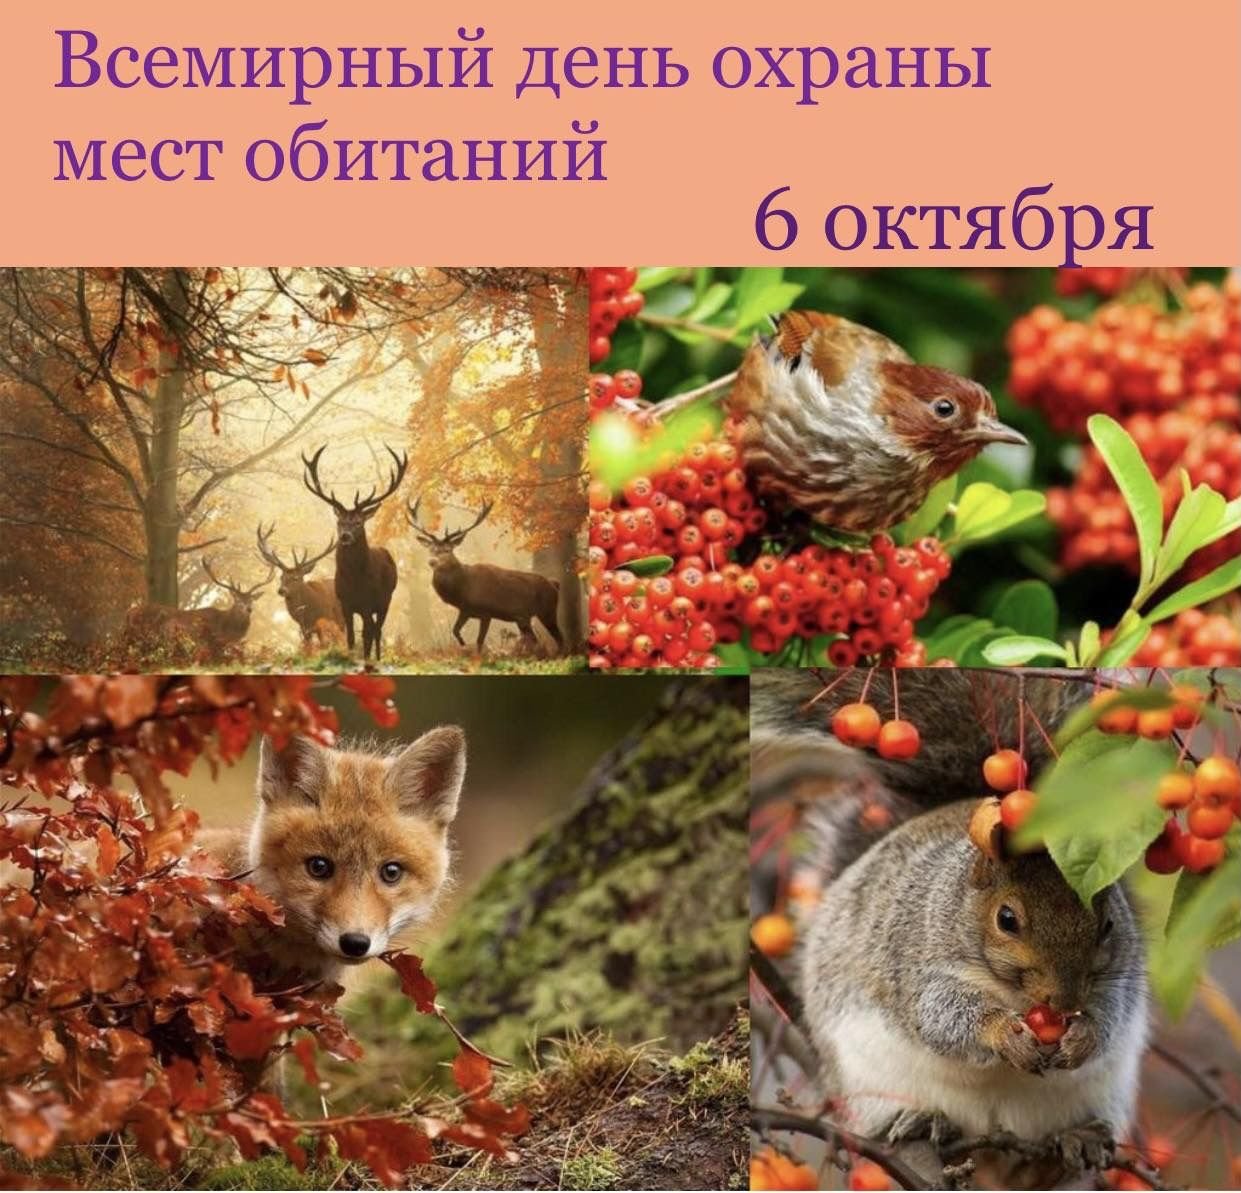 Осеннего неживой природы. Живая природа осенью. Растения и животные осенью. Осенние изменения в живой природе. Изменения в живой природе осенью.